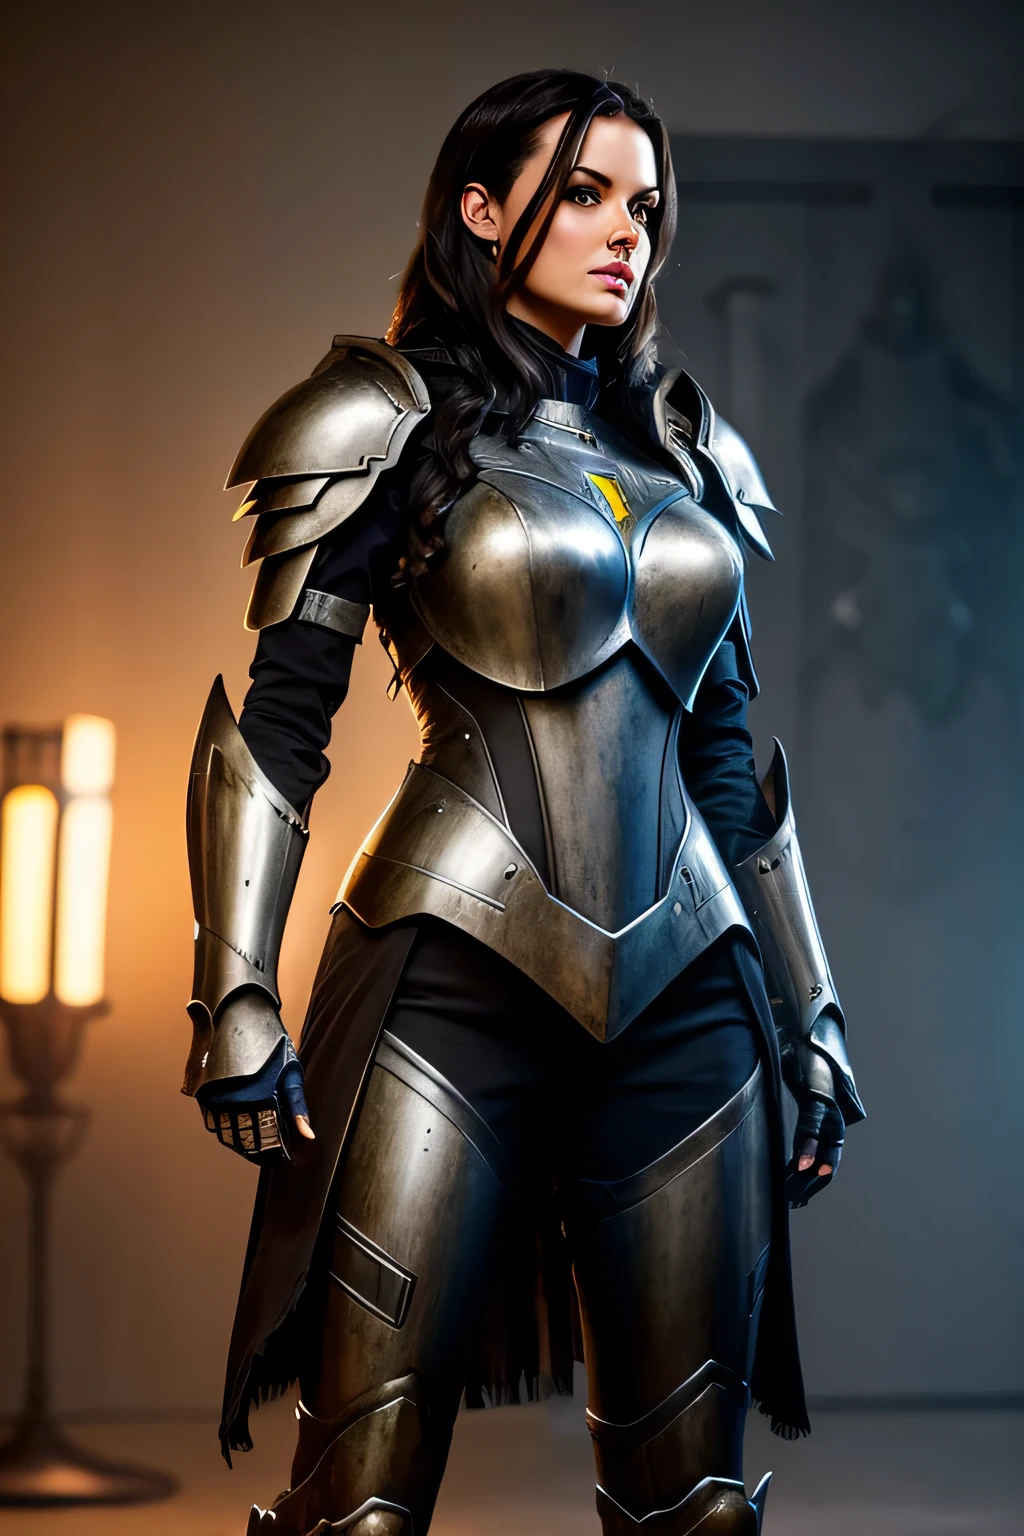 Высокая красивая женщина с темными волосами в очень реалистичной и детализированной роботизированной броне.